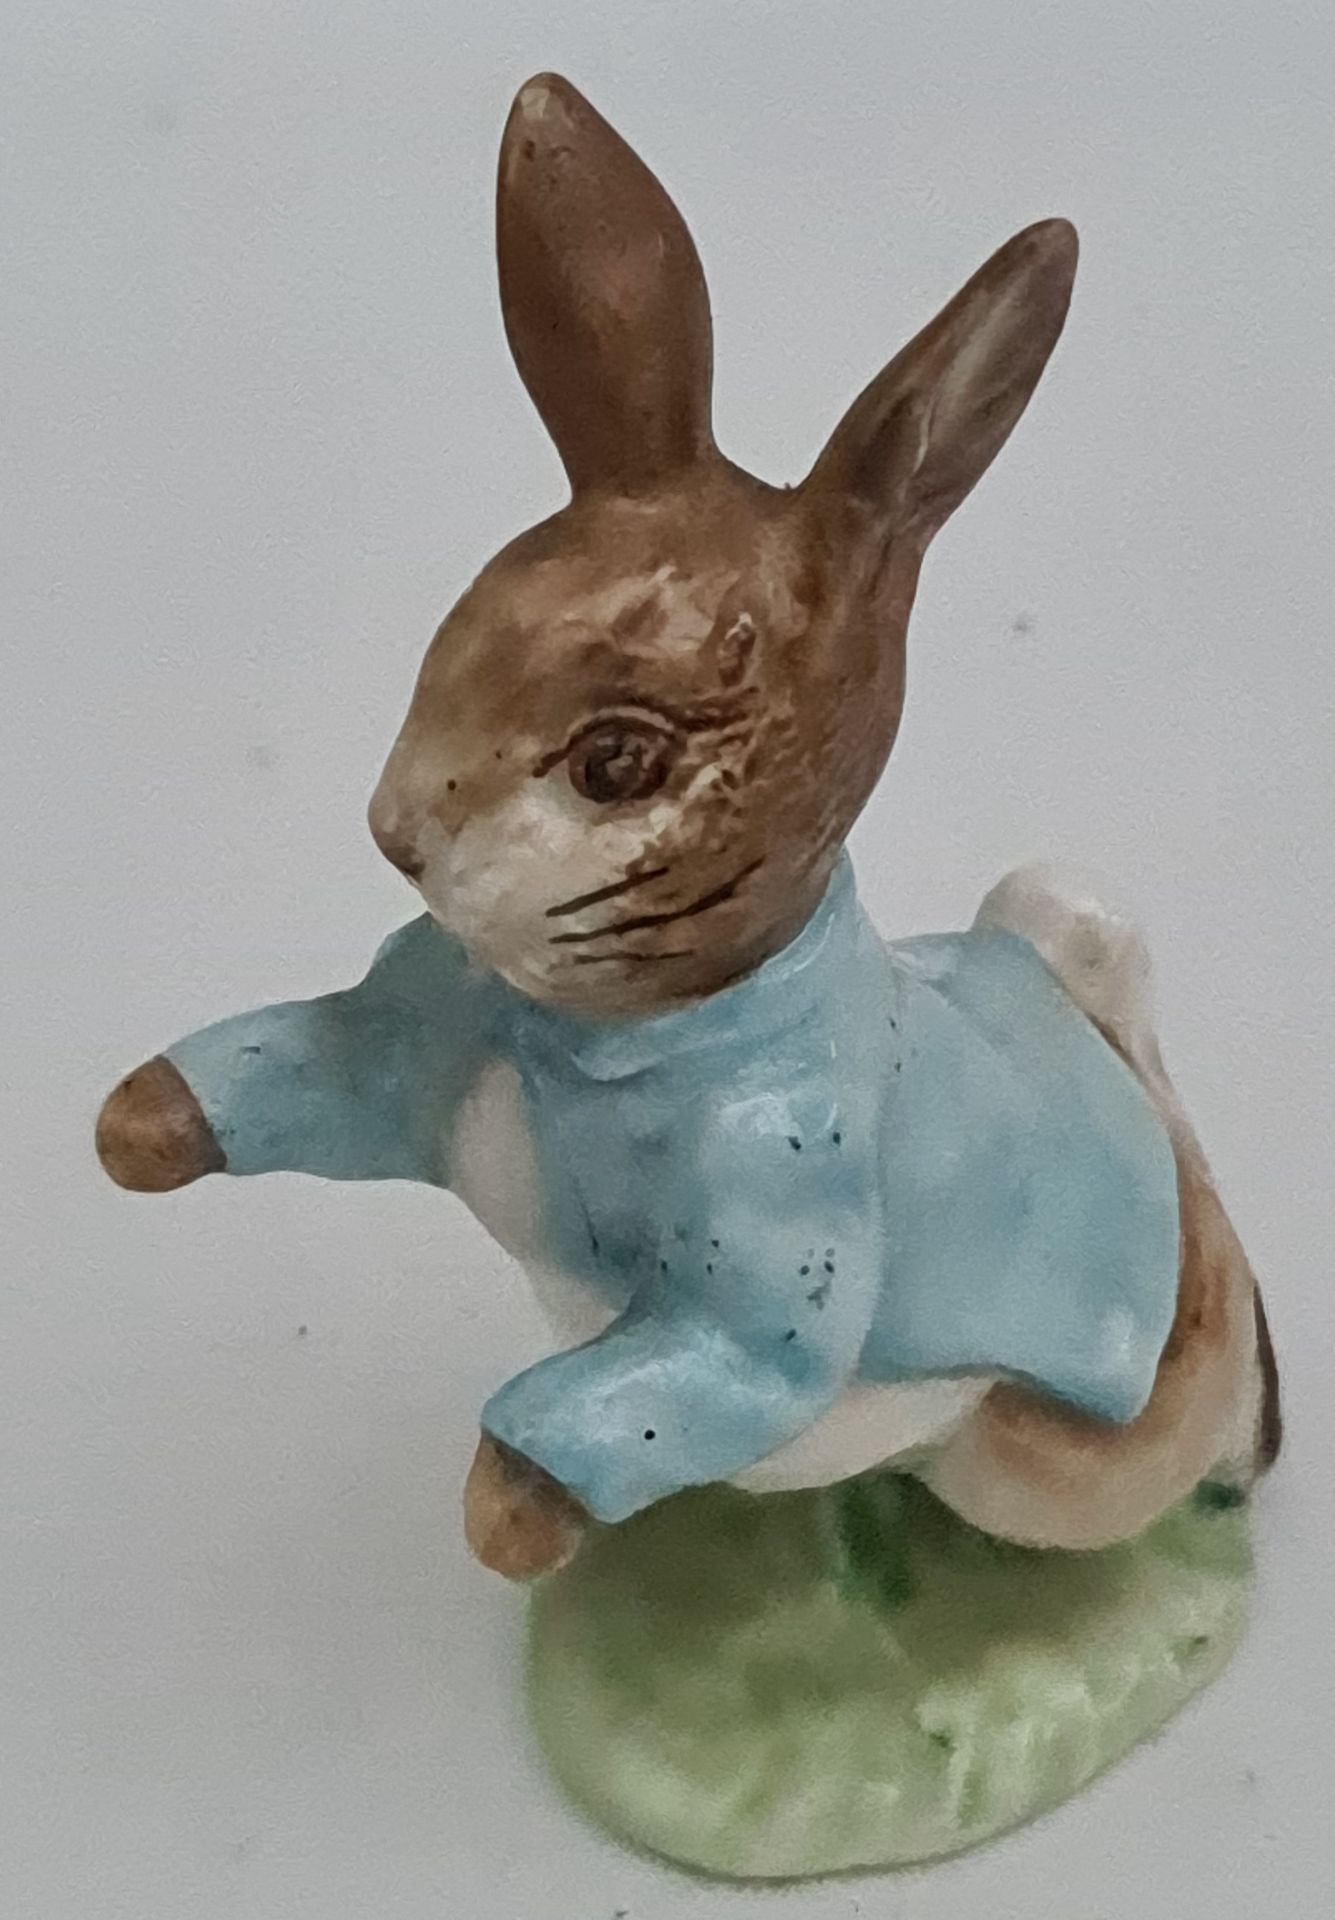 Vintage Beatrix Potter 1948 Peter Rabbit Figure Vintage Beatrix Potter 1948 Peter Rabbit Figure.